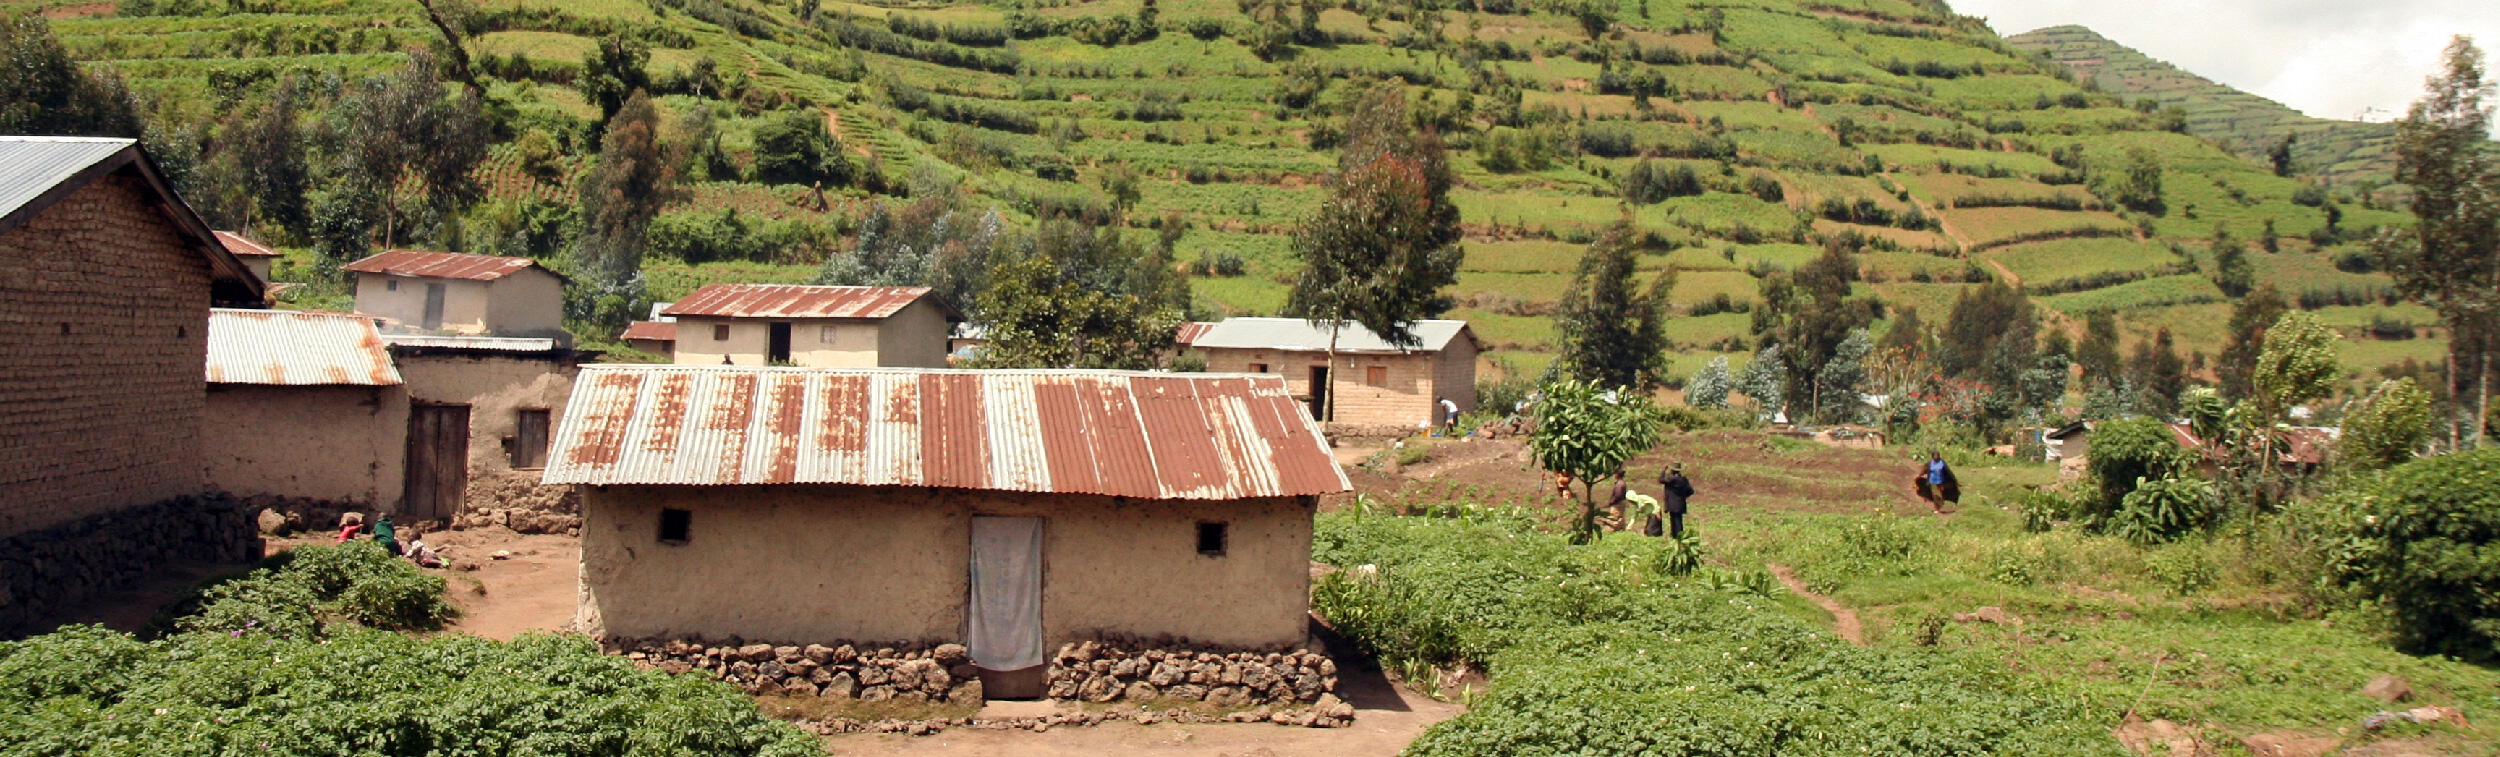 Une ferme au Rwanda.